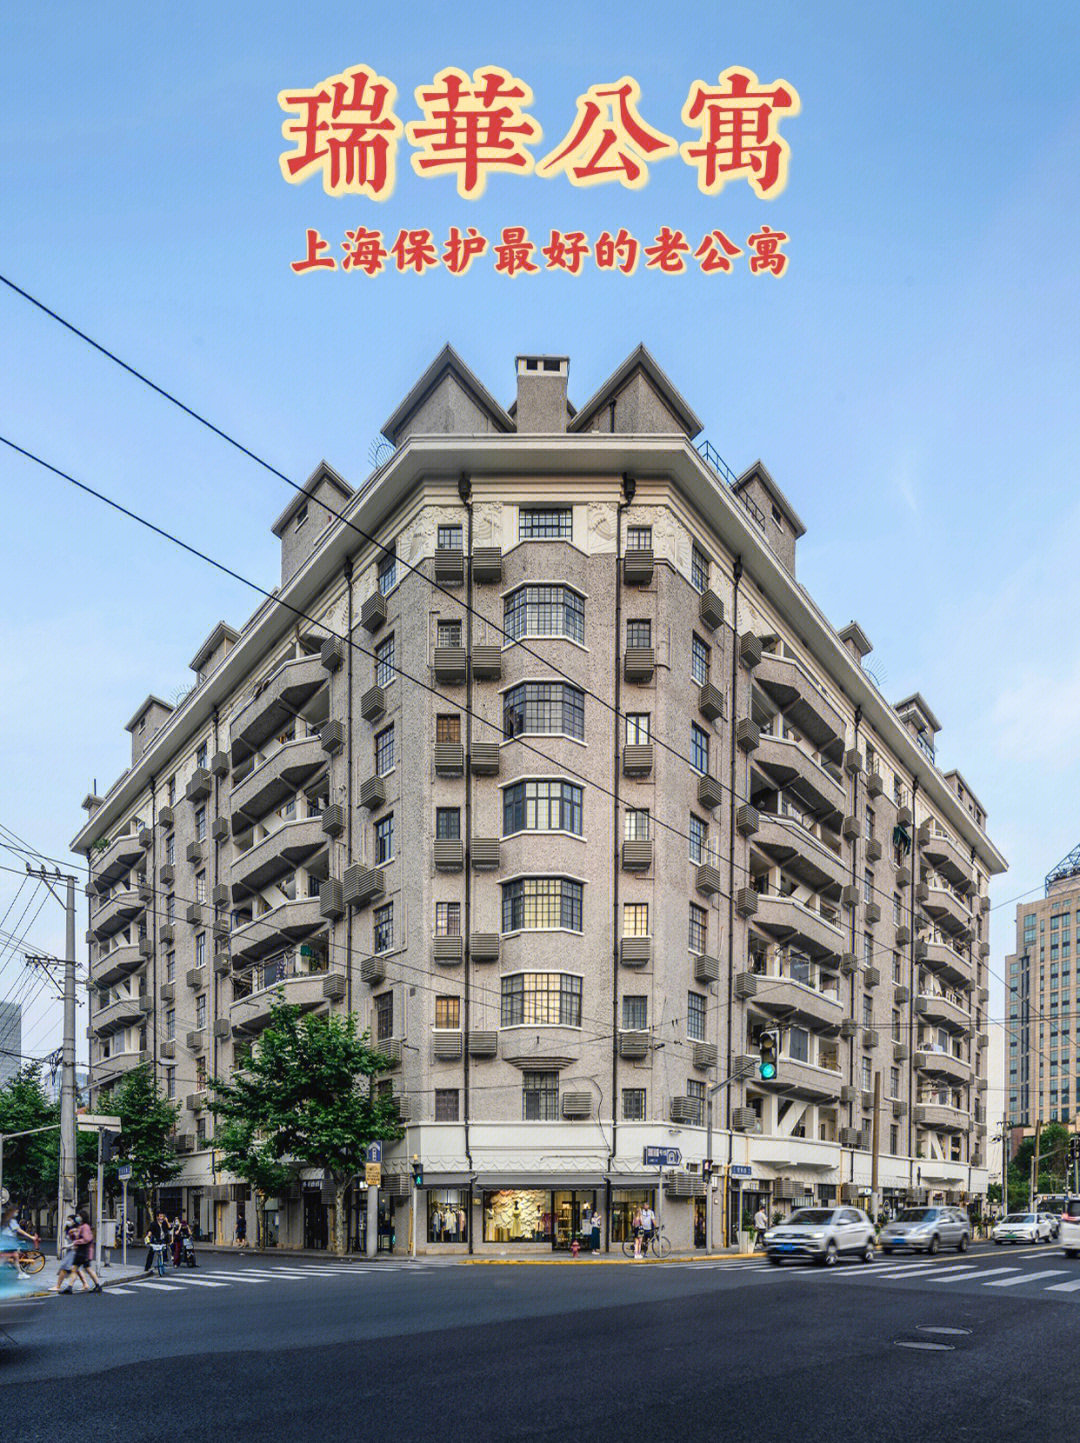 上海保护蕞好的老公寓瑞华公寓